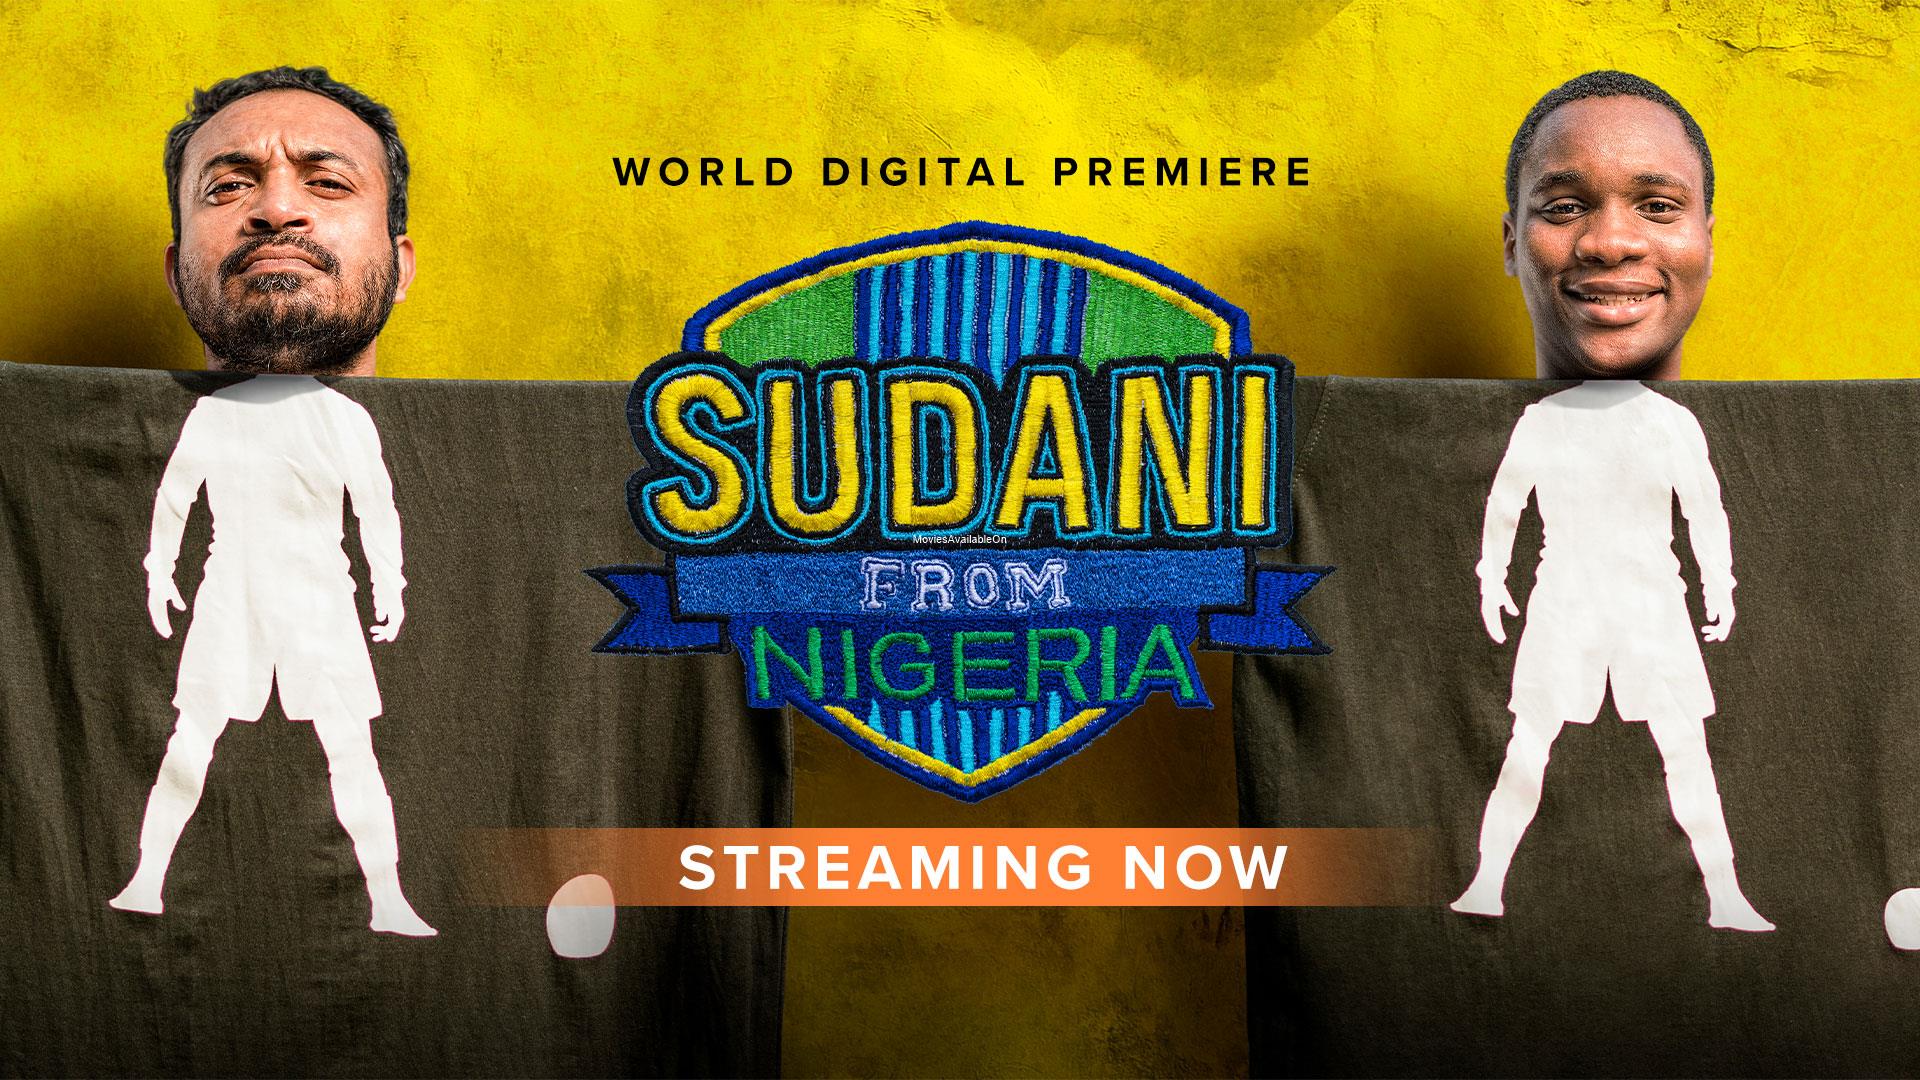 SUDANI FROM NIGERIA